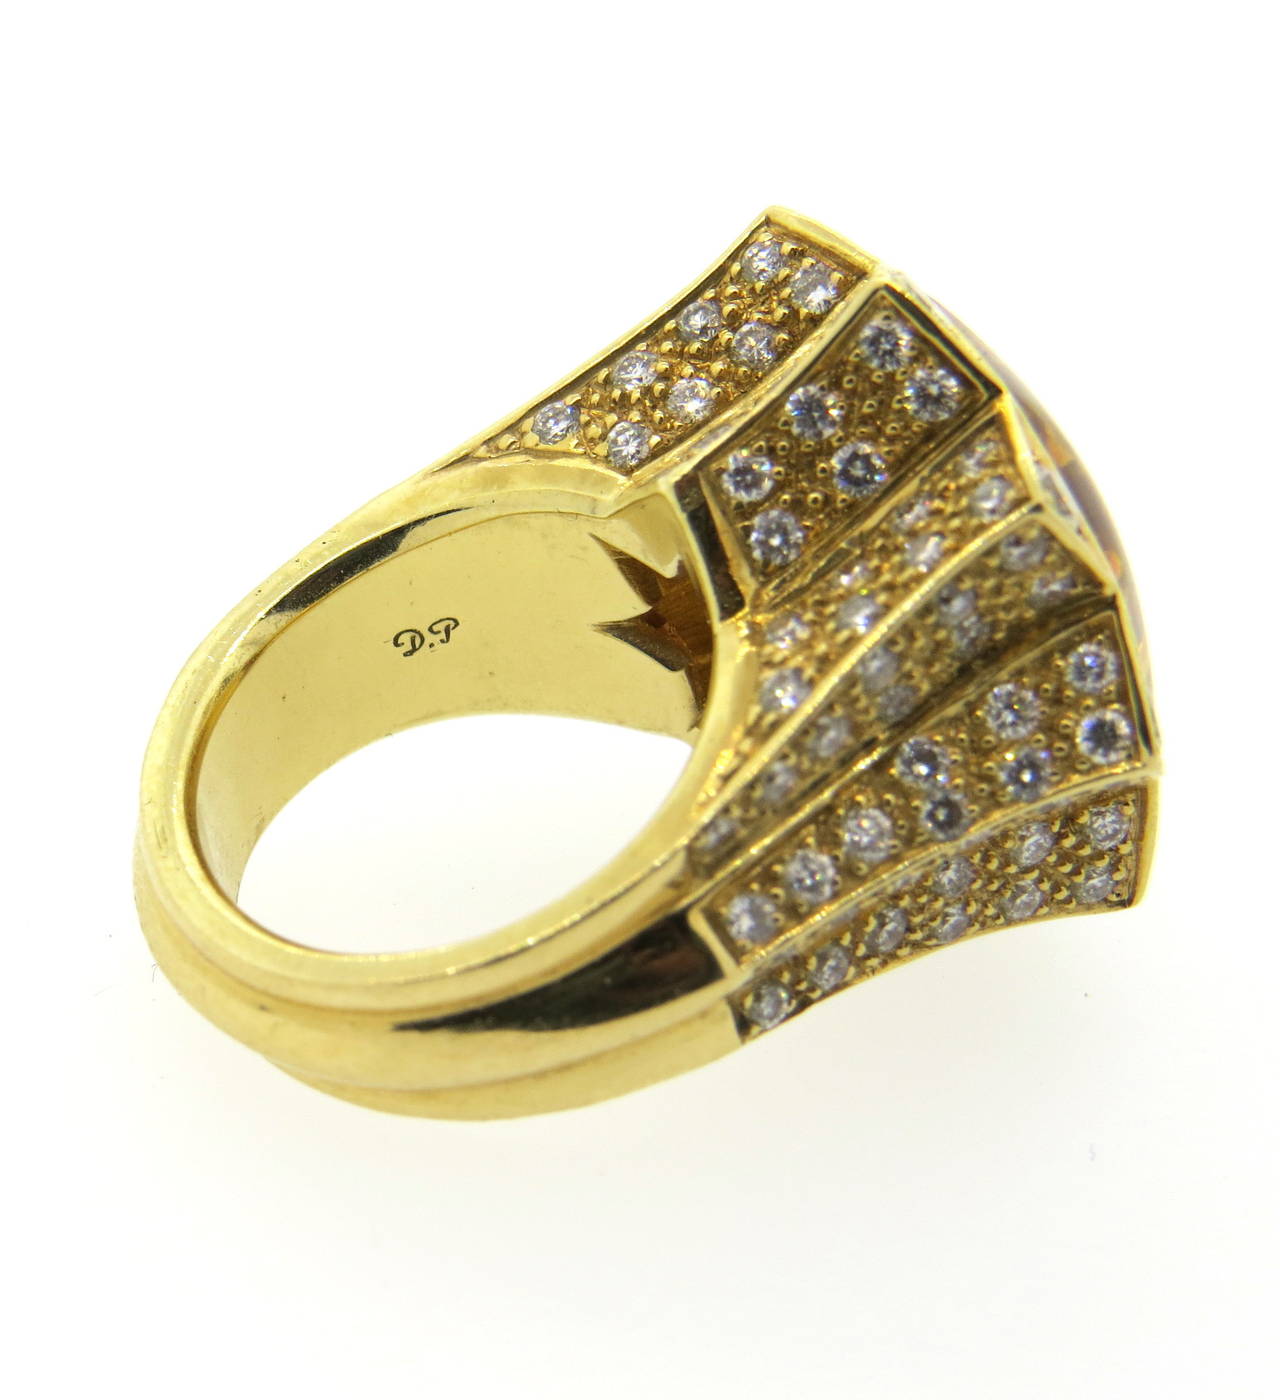 Stephen Webster Citrine Diamond Gold Ring 1